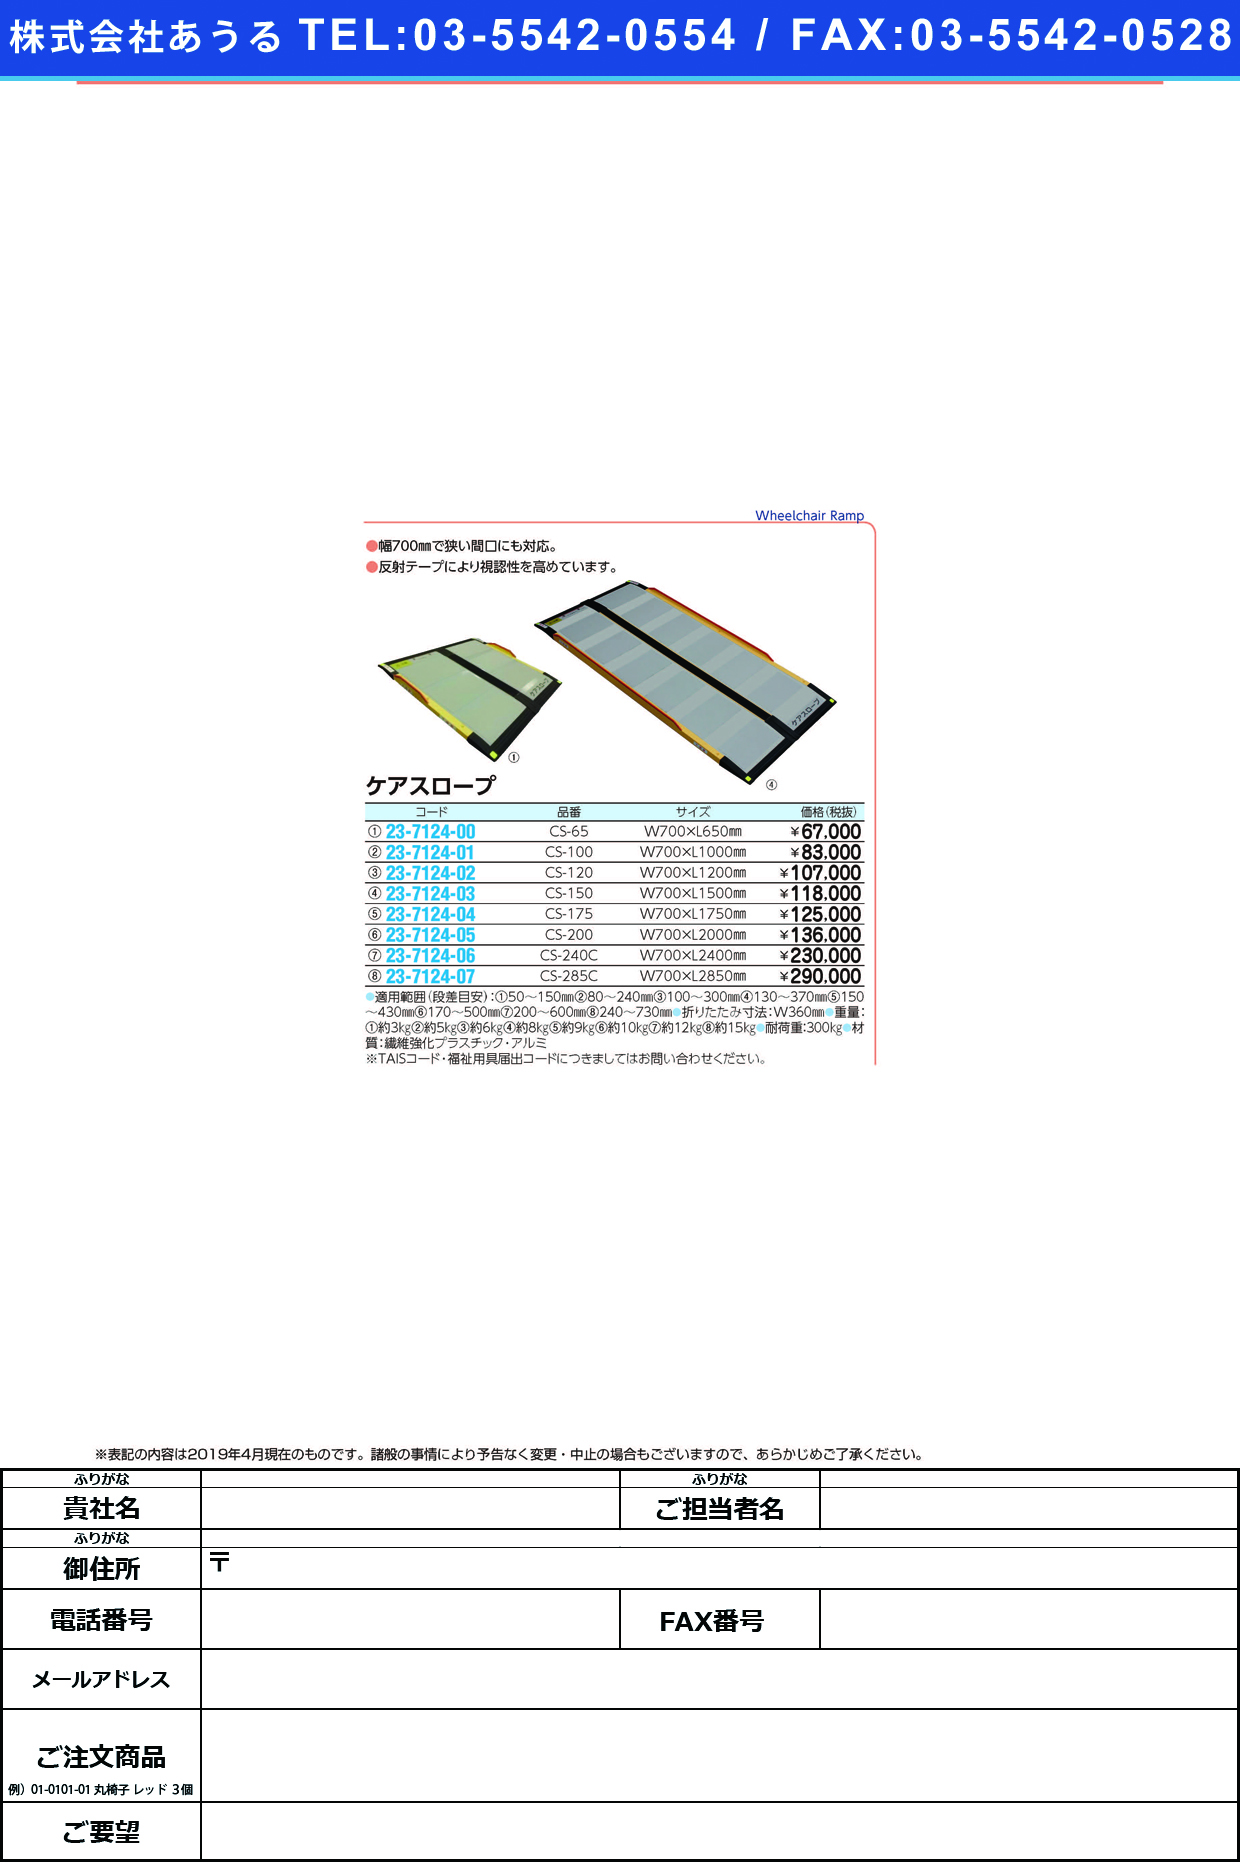 (23-7124-06)ケアスロープ CS-240C(W700XL2400MM ｹｱｽﾛｰﾌﾟ【1台単位】【2019年カタログ商品】